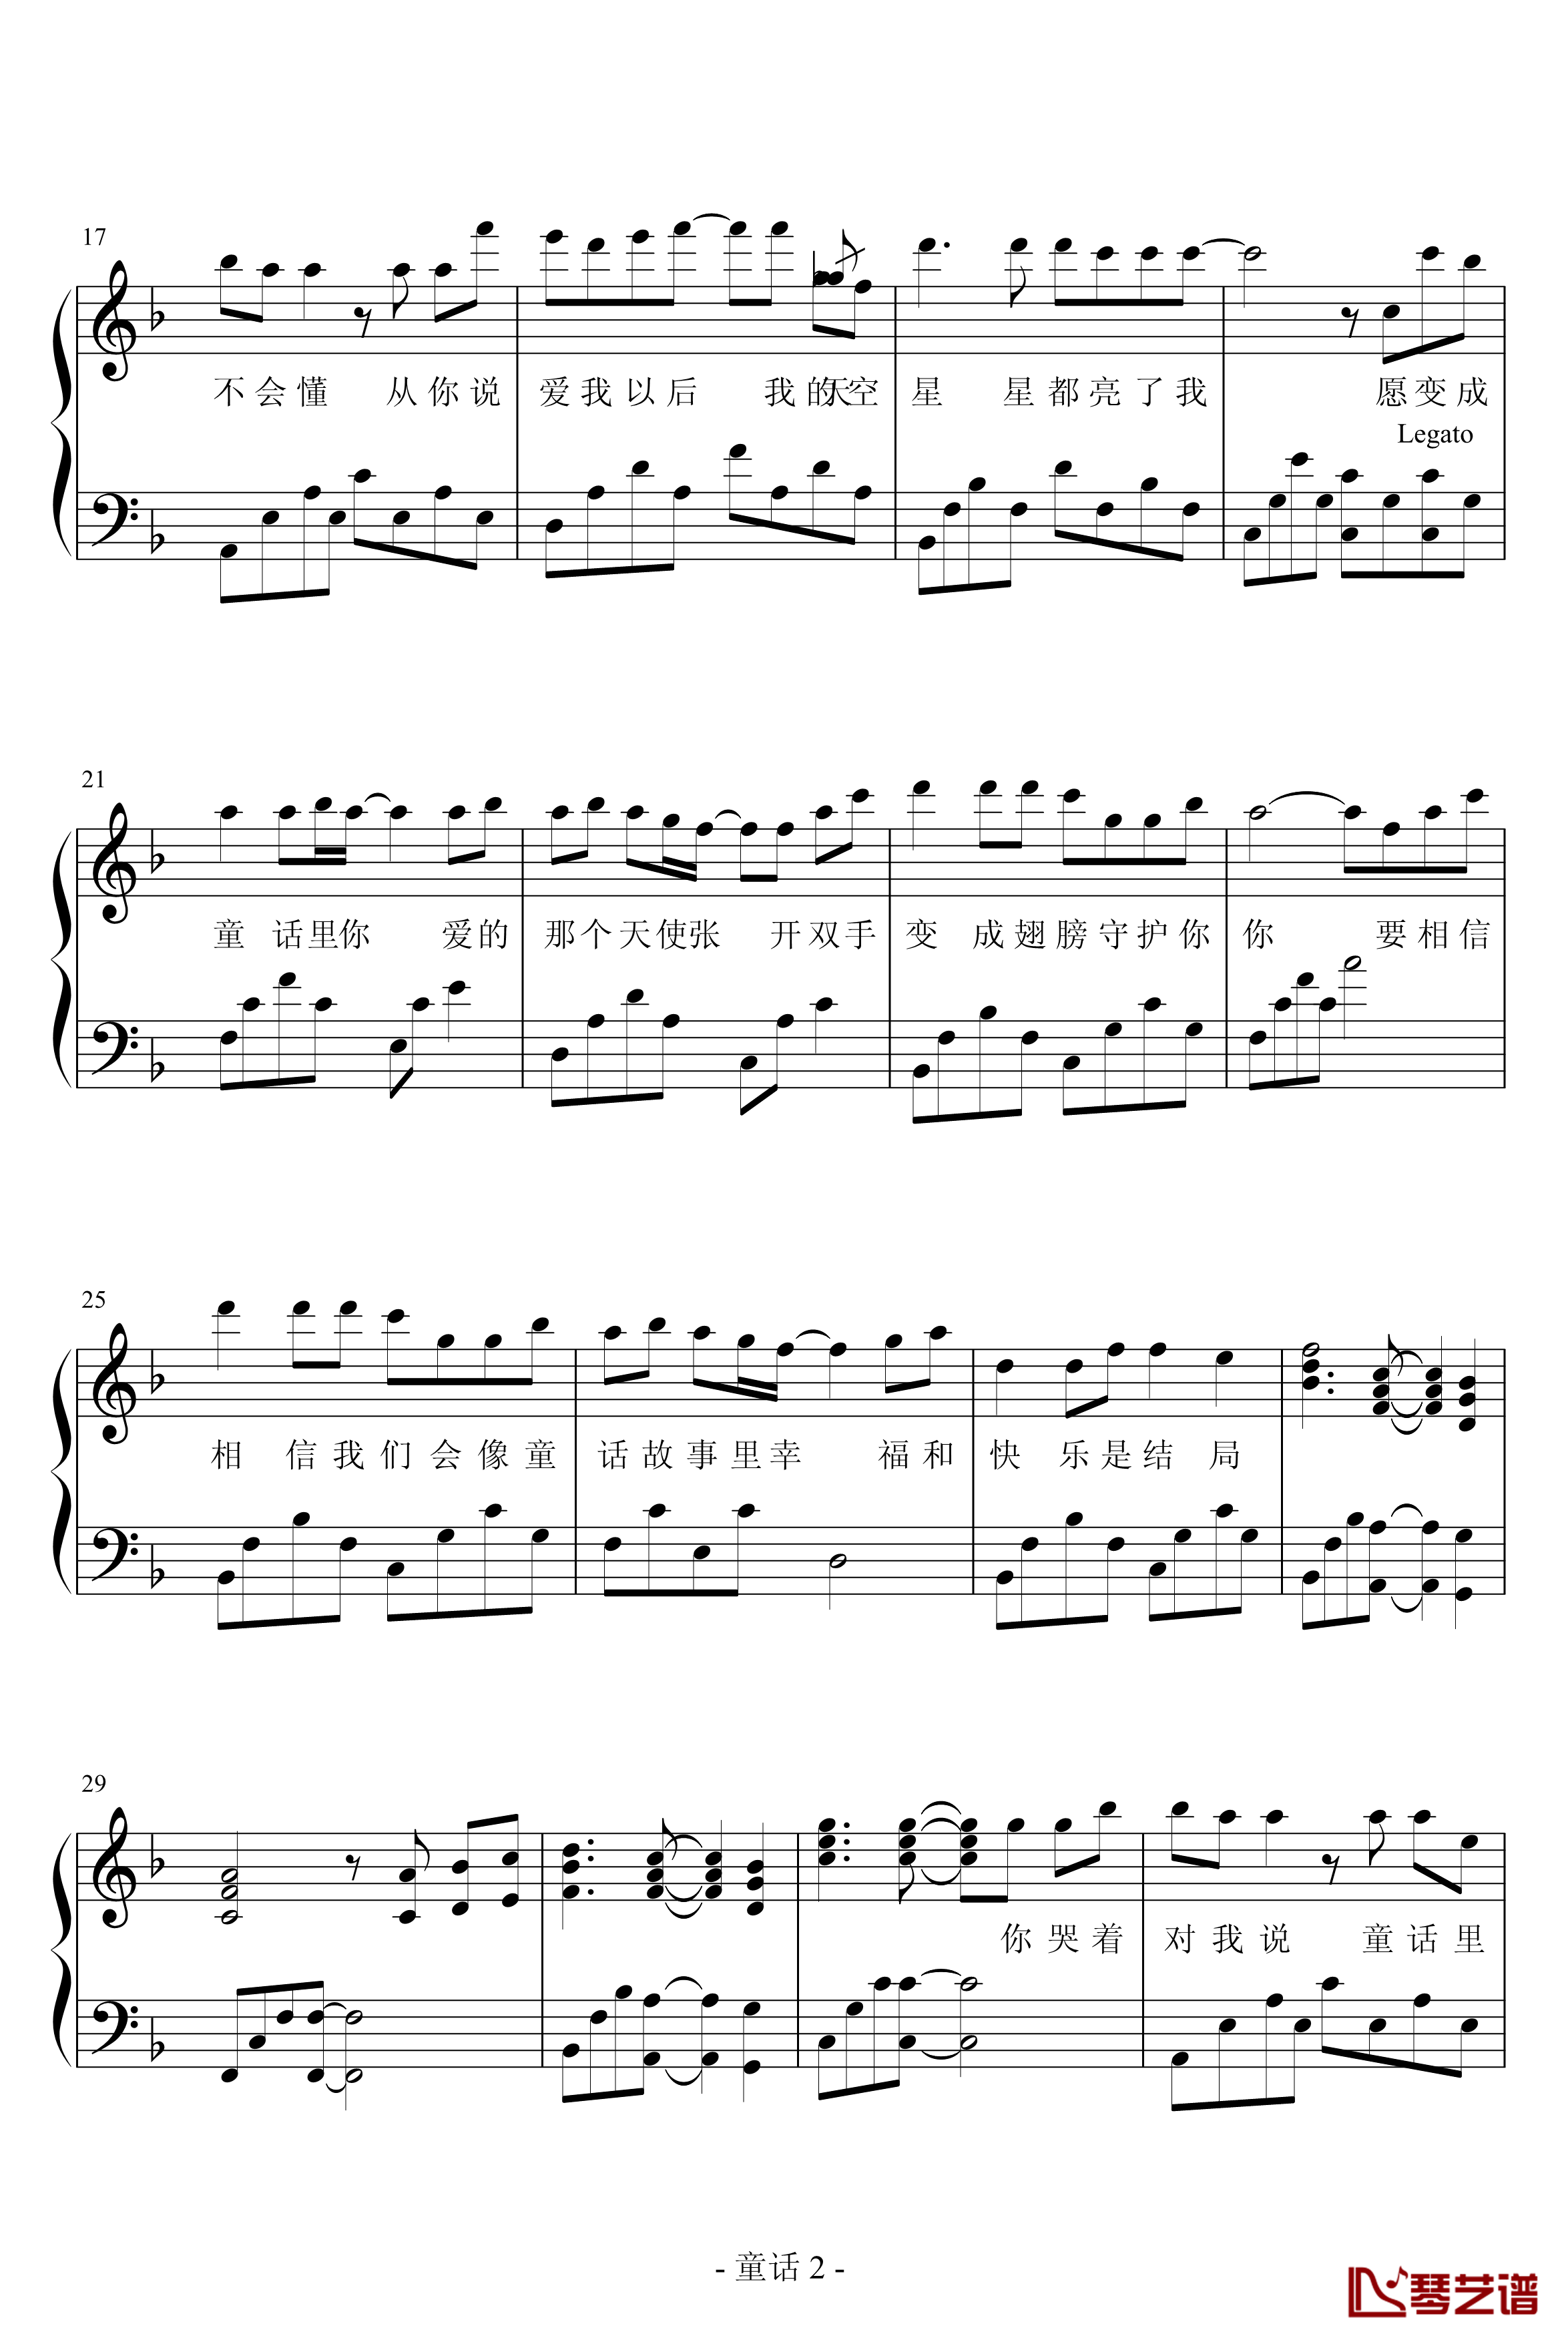 童话钢琴谱-浪客剑心版-演奏版-光良2